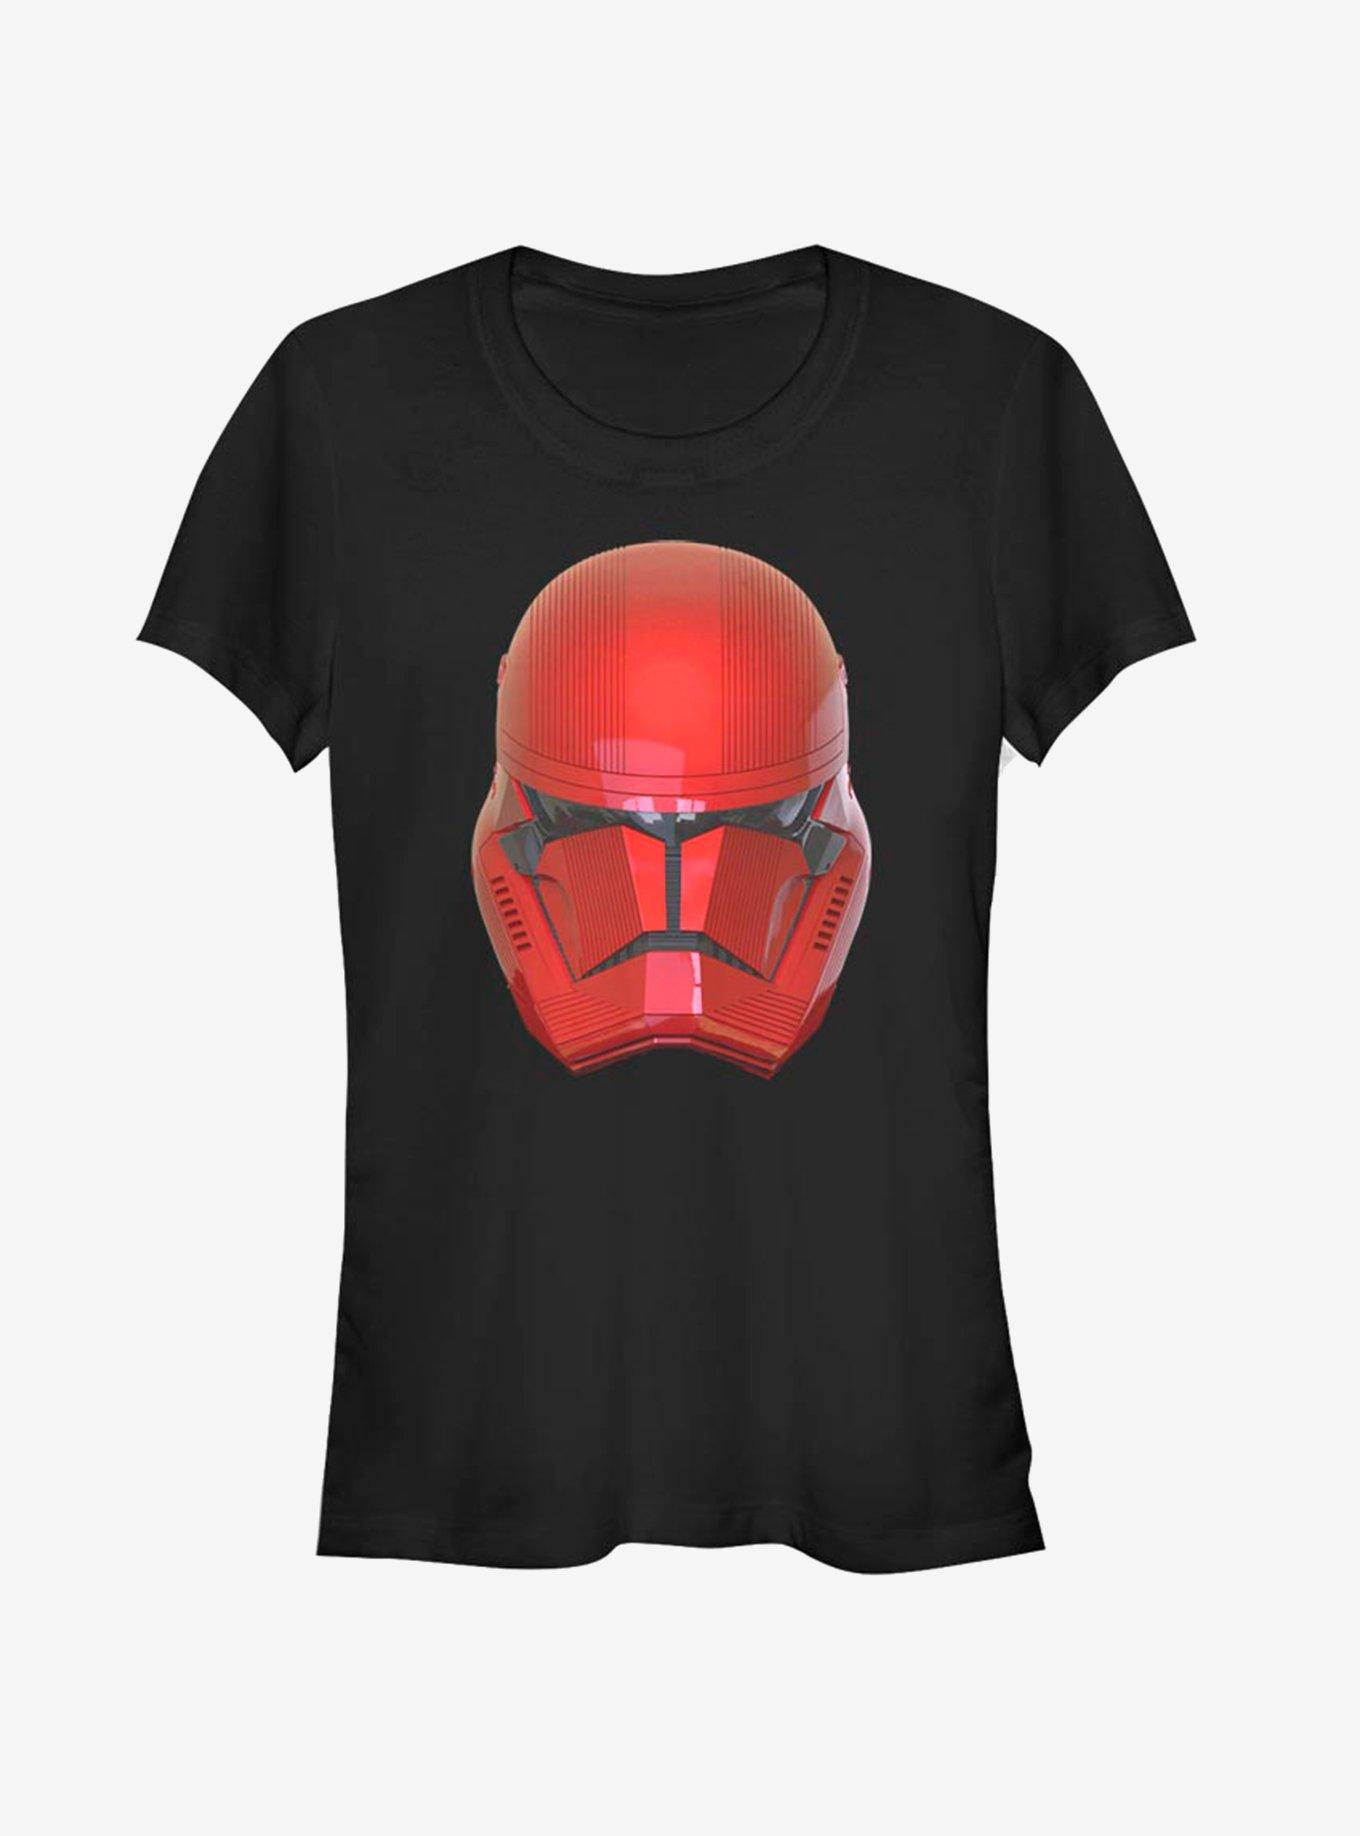 Star Wars Episode IX Rise of Skywalker Red Trooper Red Helm Girls T-Shirt, BLACK, hi-res